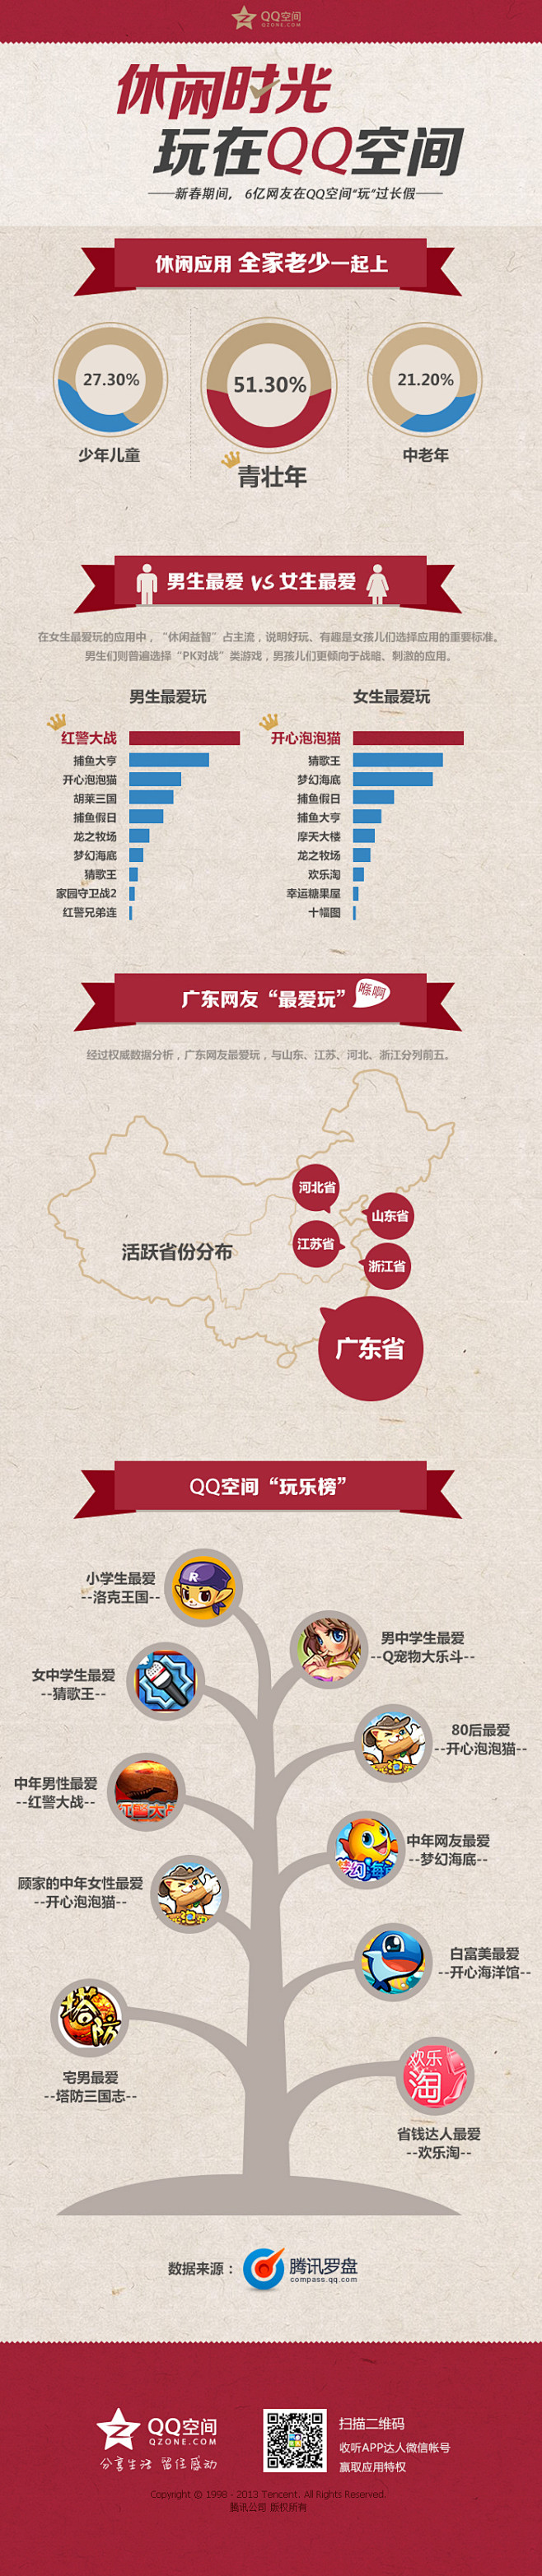 信息图第118期——中国最大社交平台用户...